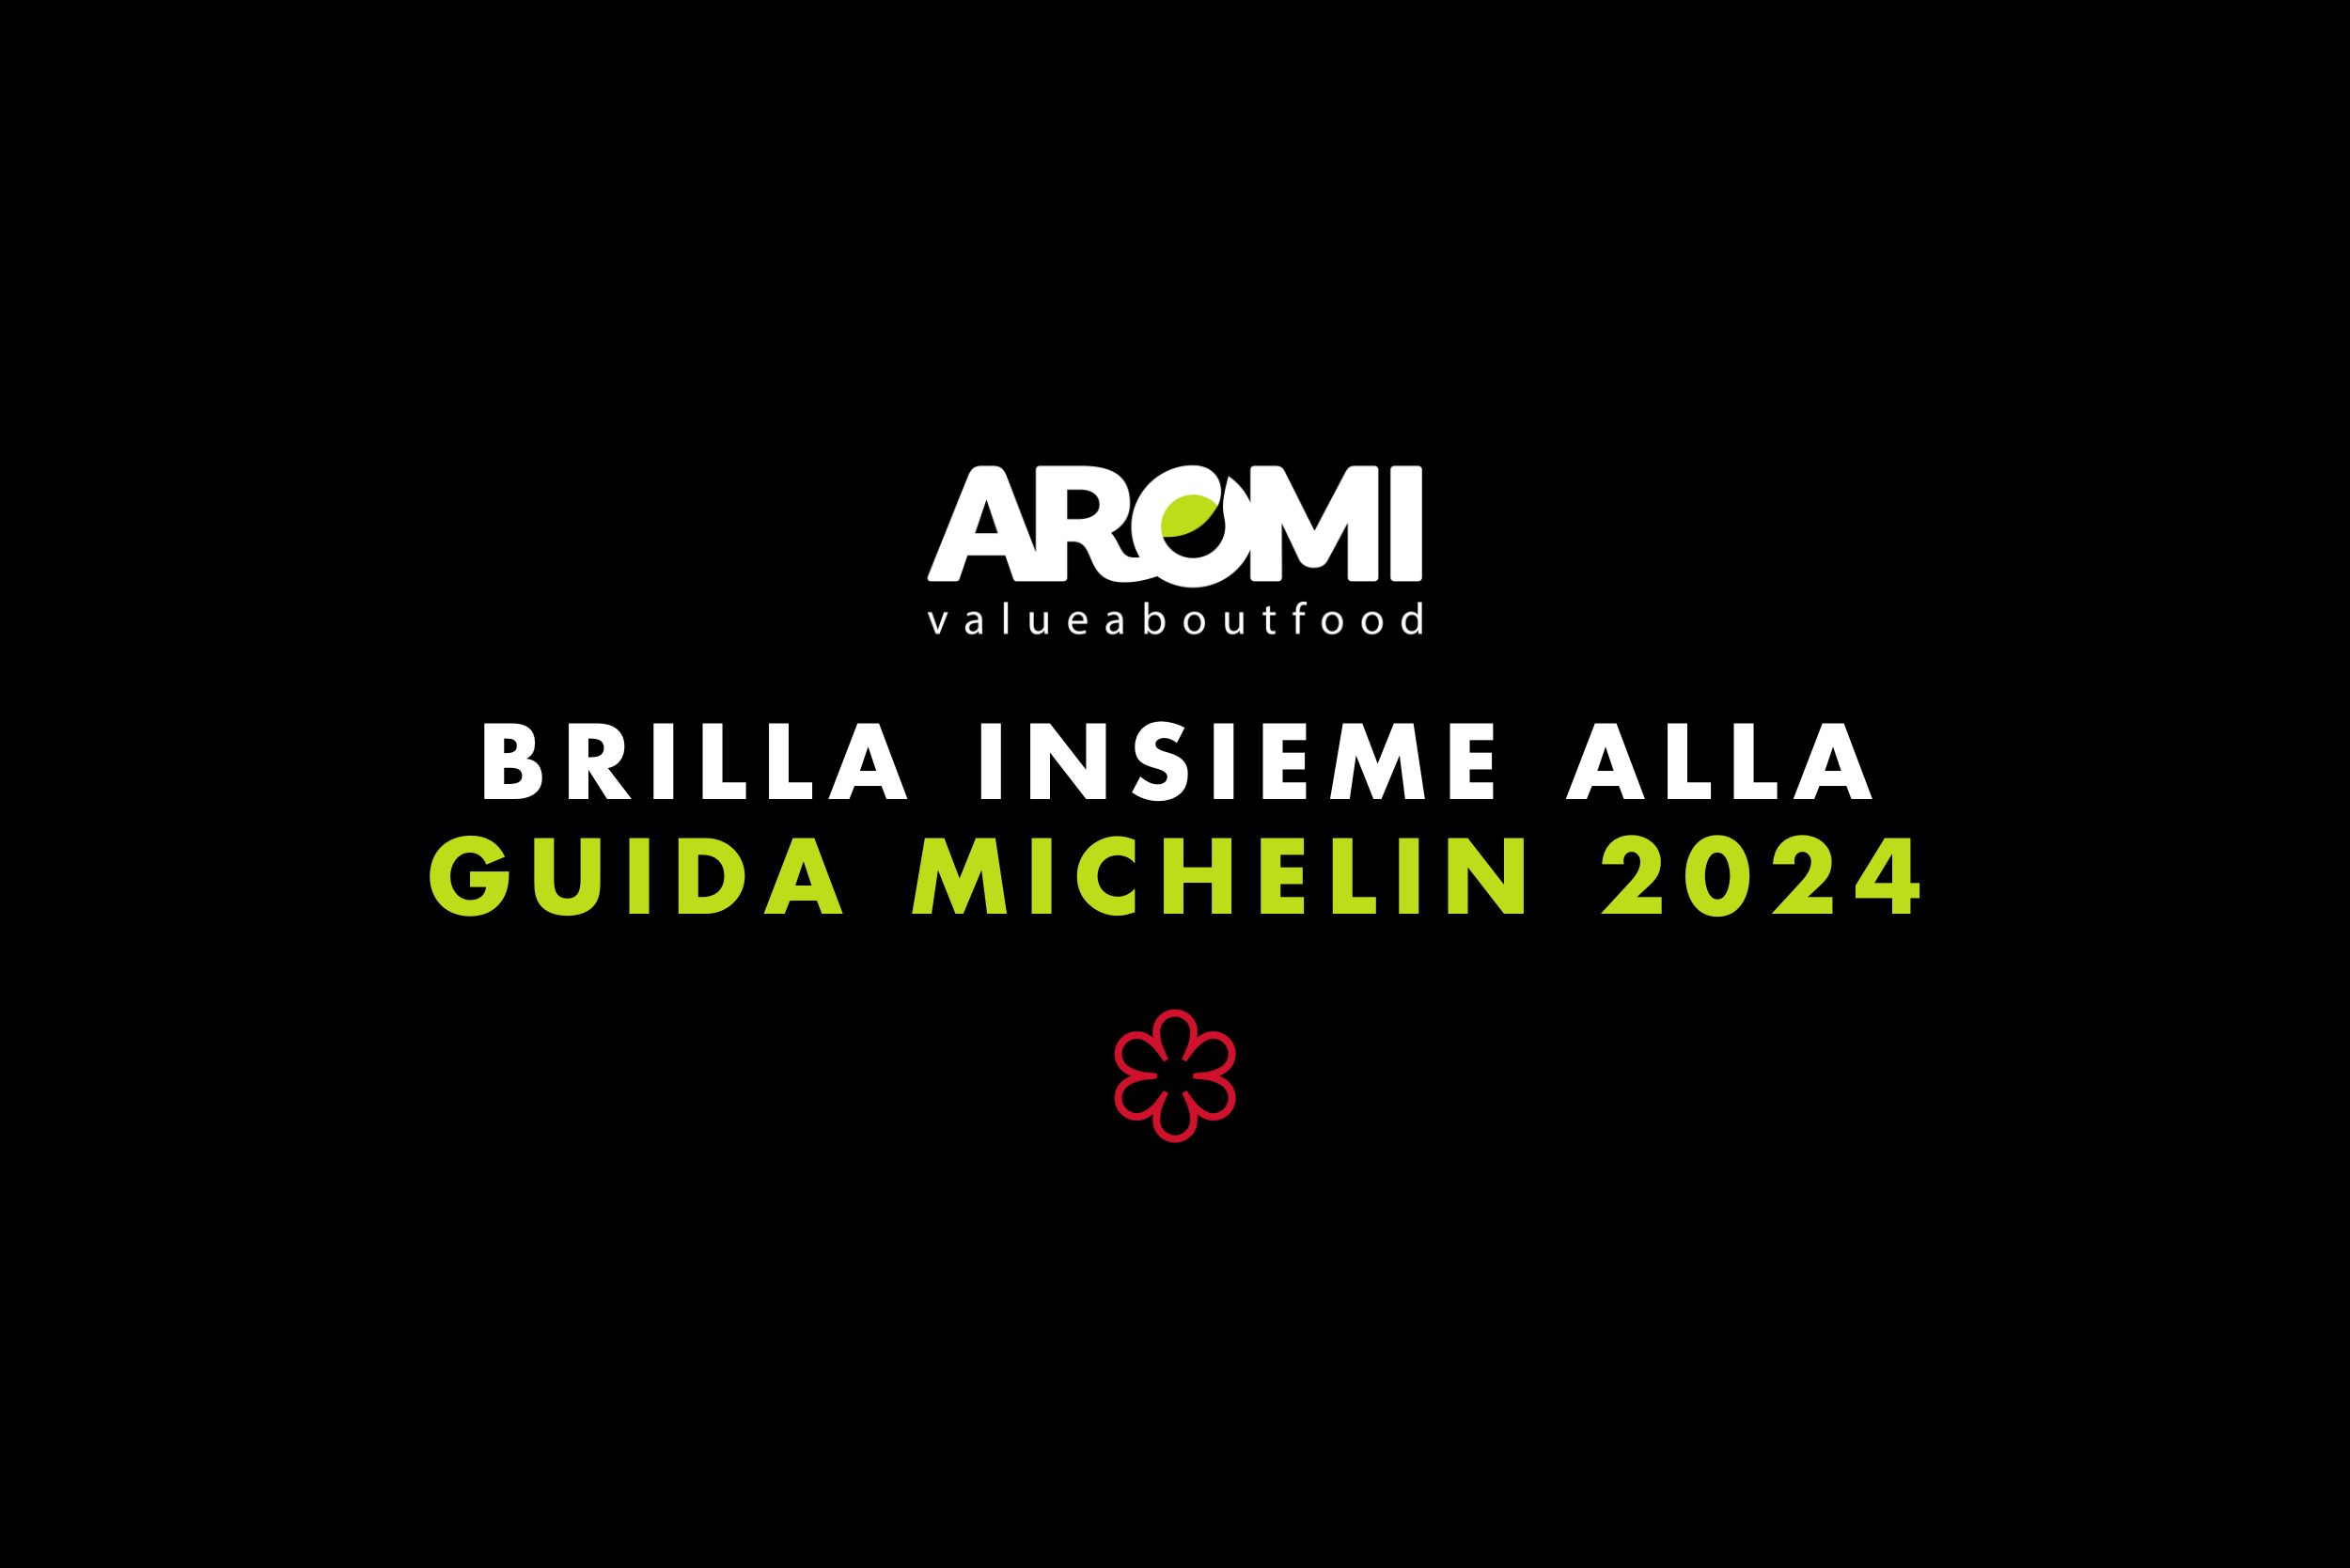 Aromi brilla insieme alla nuova guida Michelin 2024